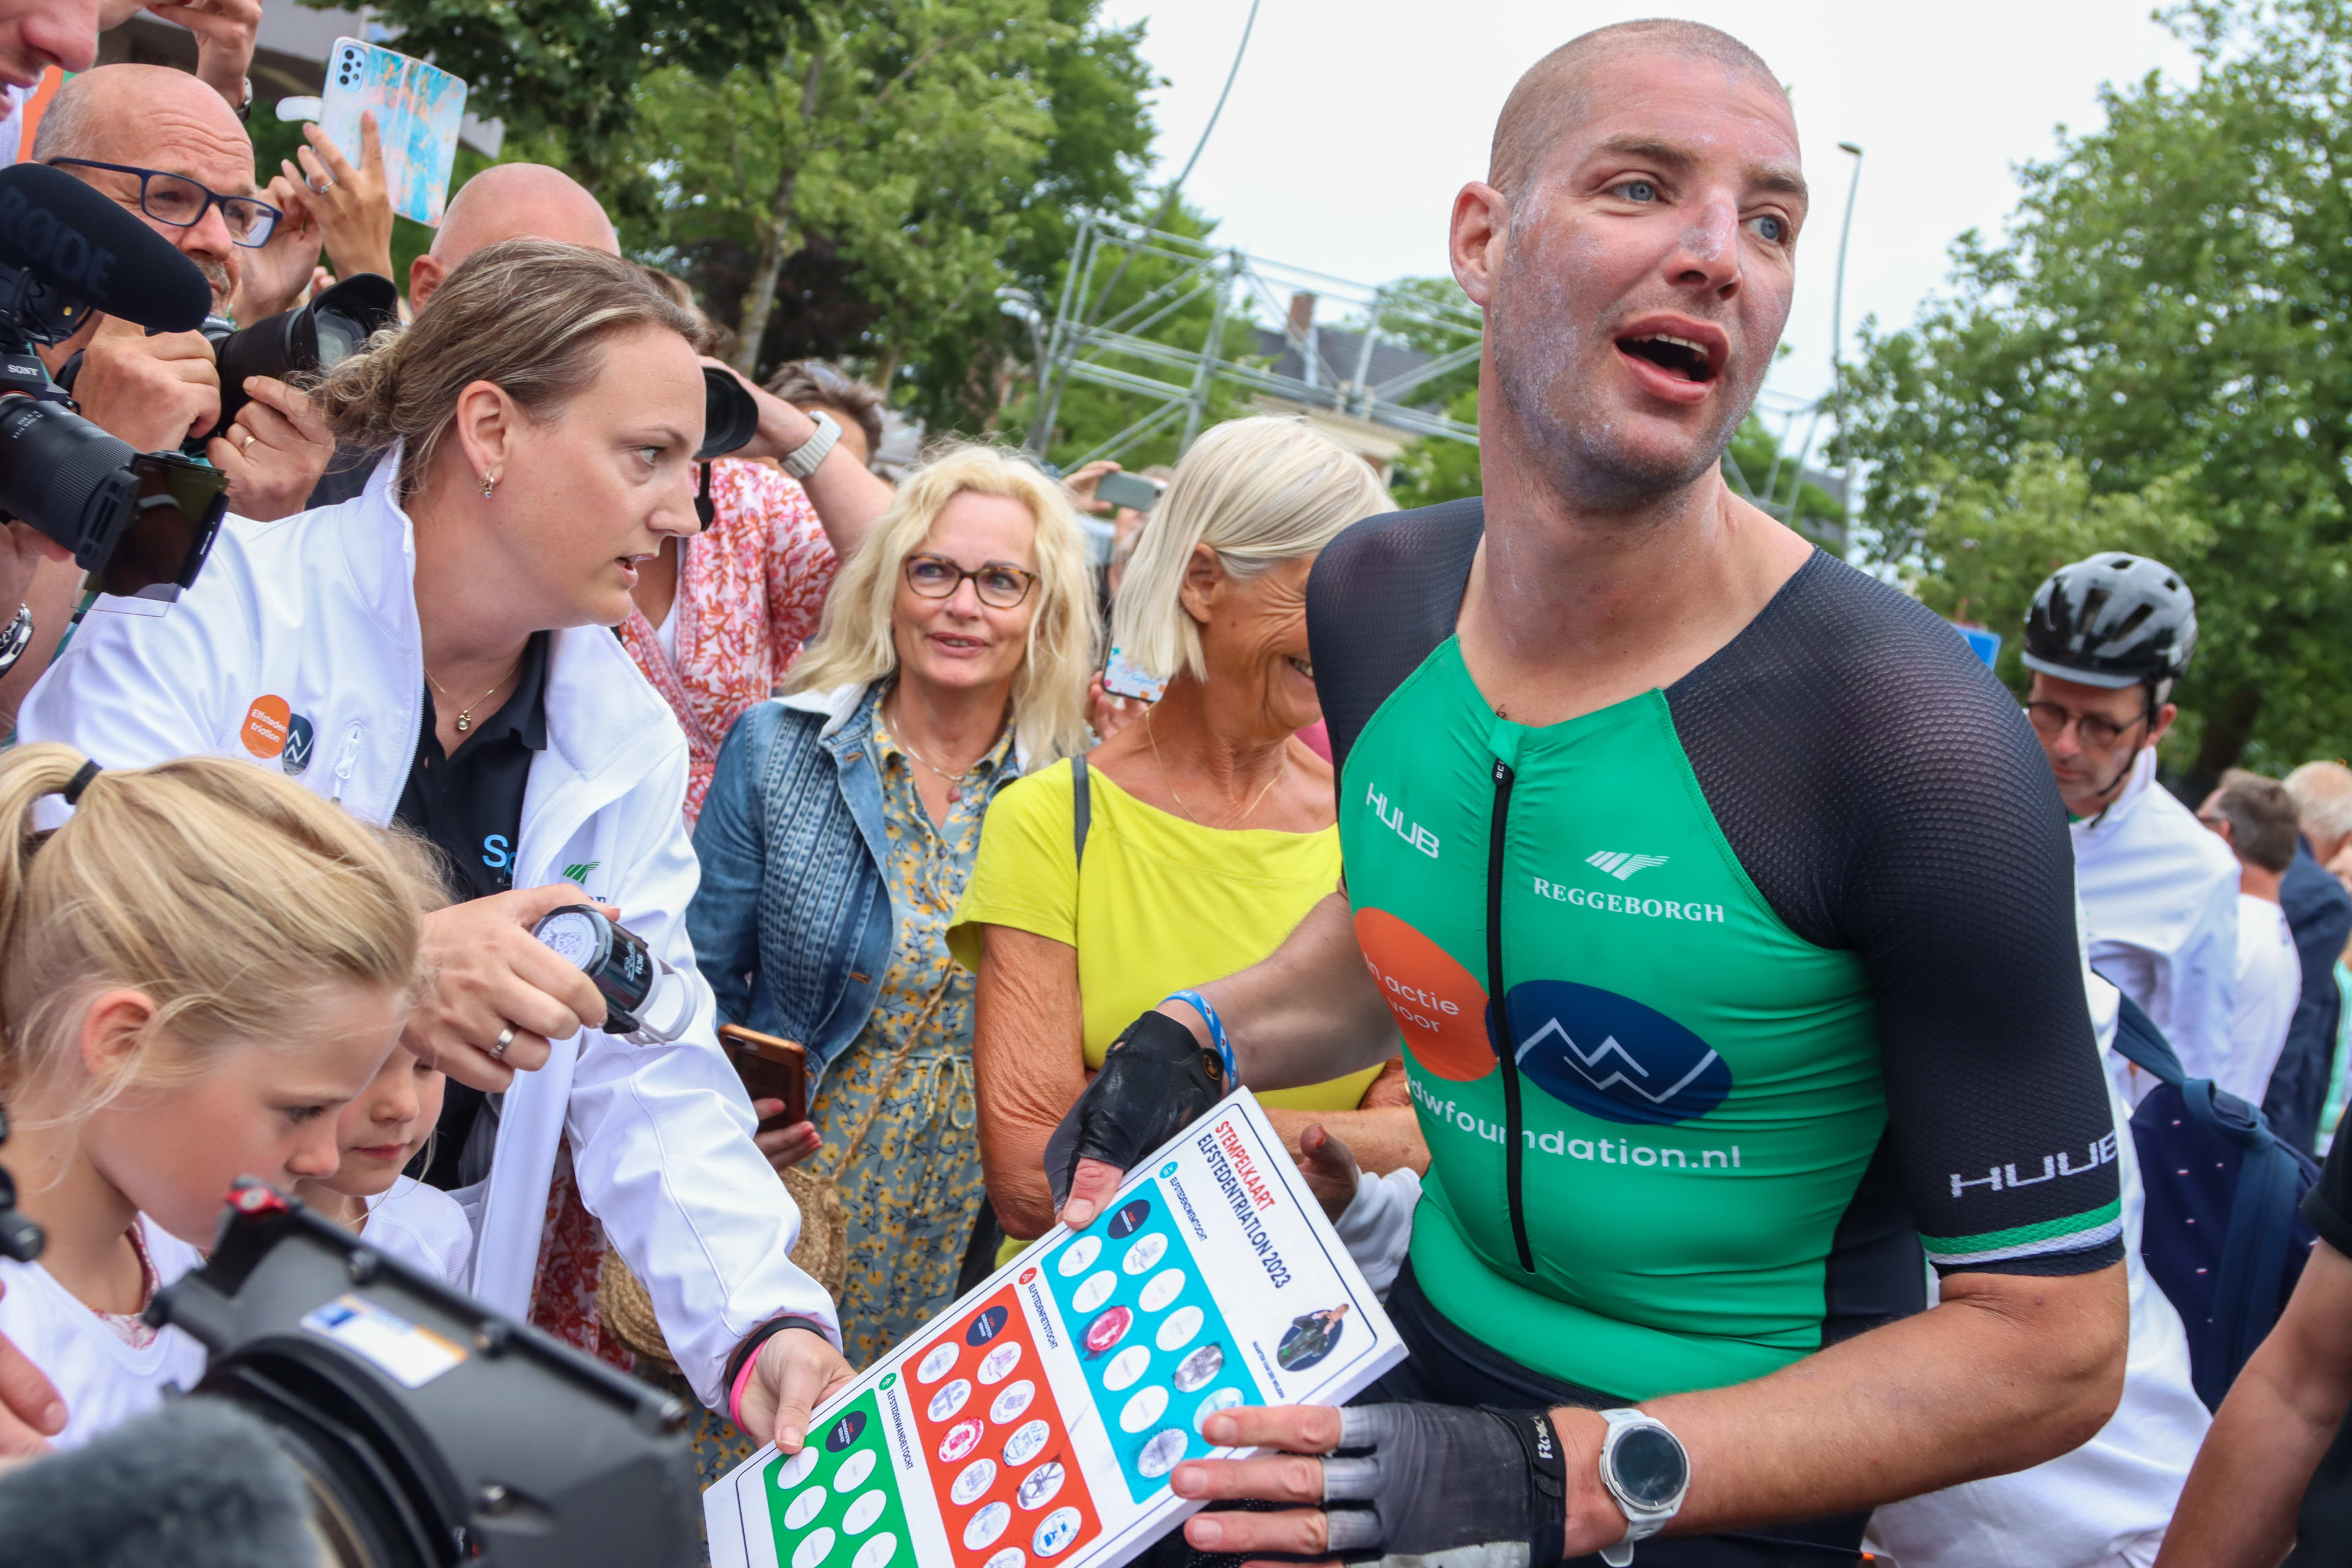 Van der Weijden finisht elfstedentriatlon zaterdag nog niet: 'Hij moet nu eerst rusten'